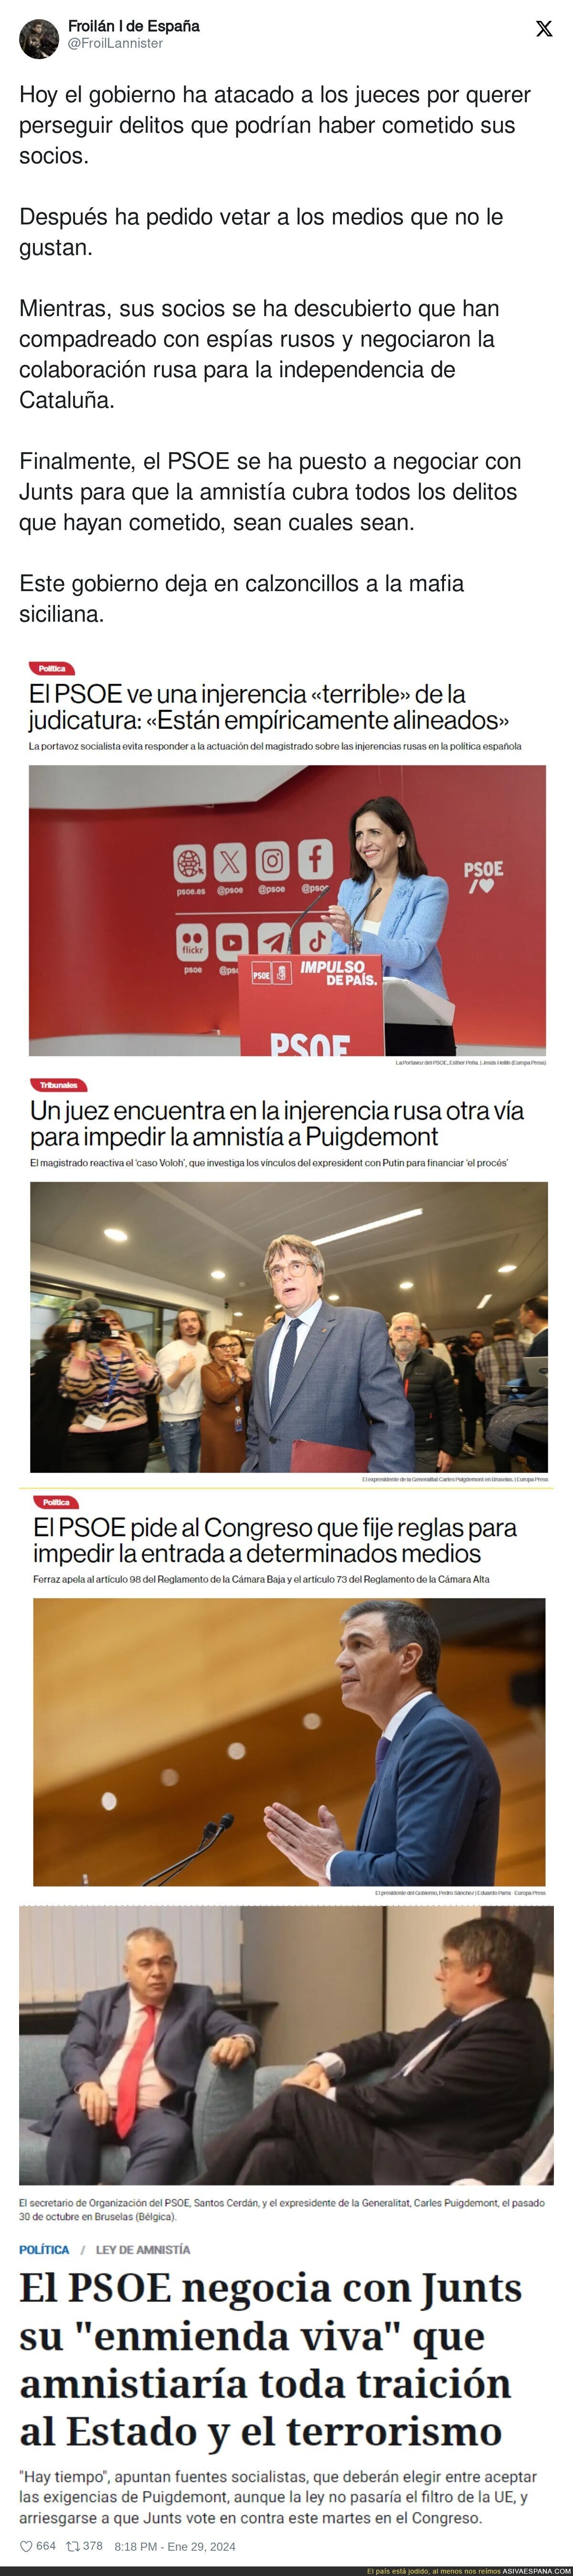 Sigue la negociación PSOE-Junts